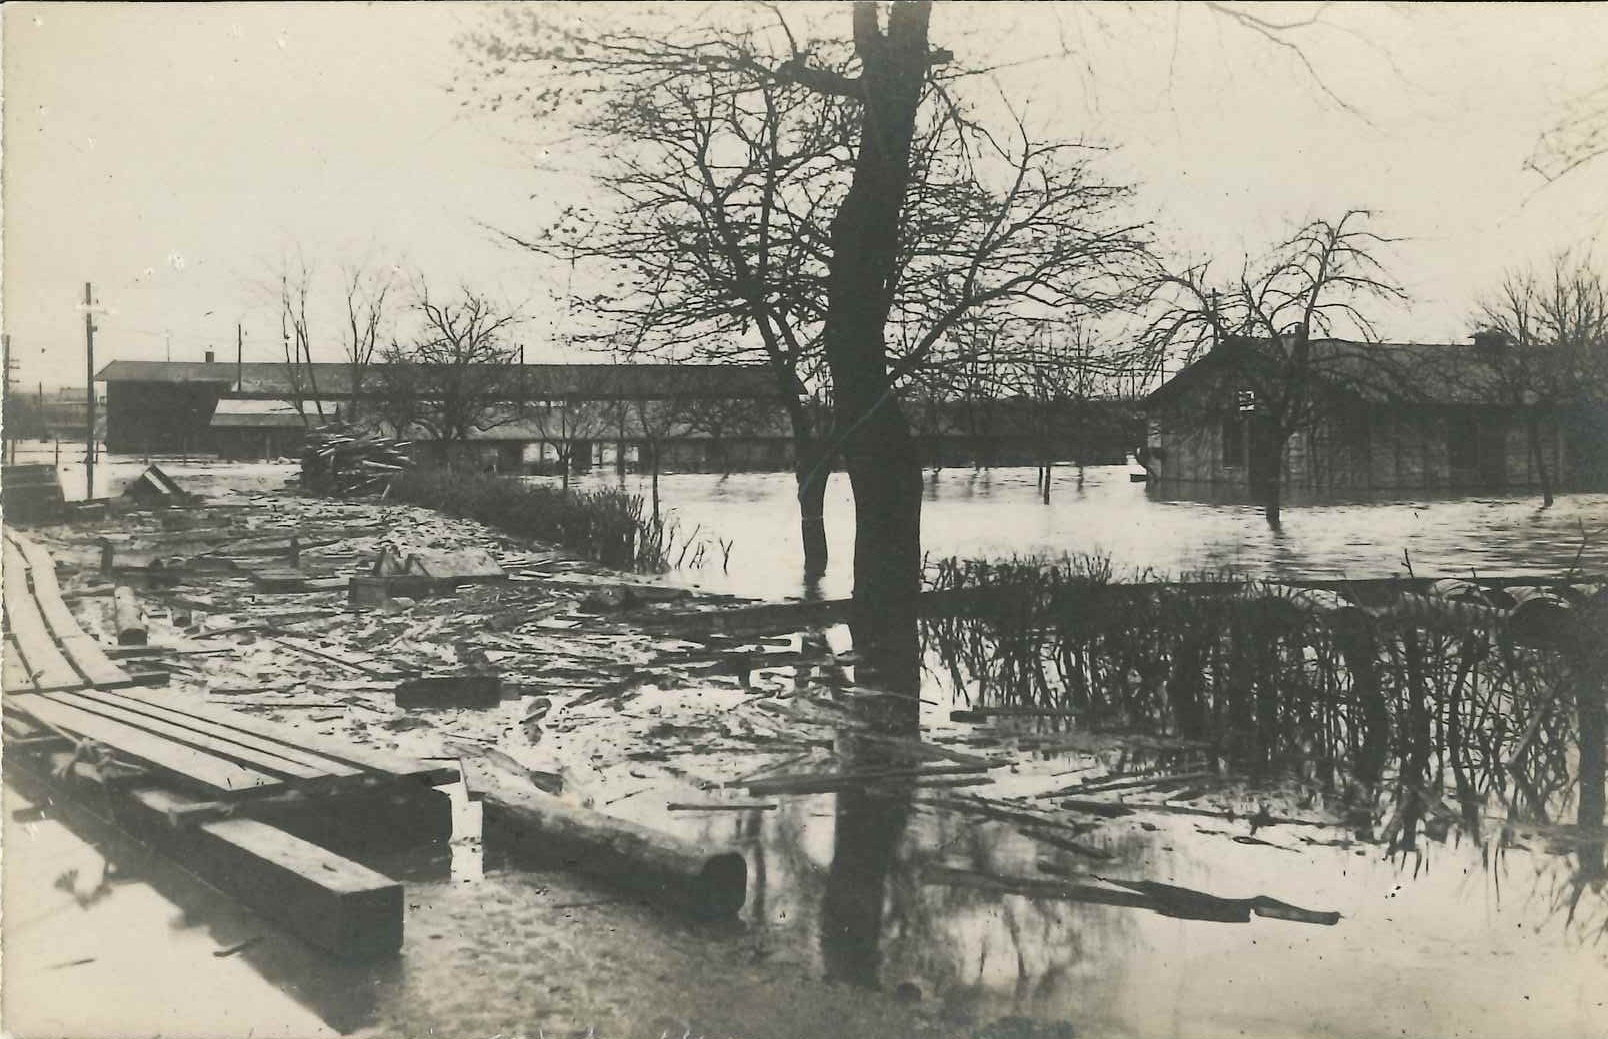 Hochwasser Bendorf Dez. 1919 - Jan. 1920 (Rheinisches Eisenkunstguss-Museum CC BY-NC-SA)